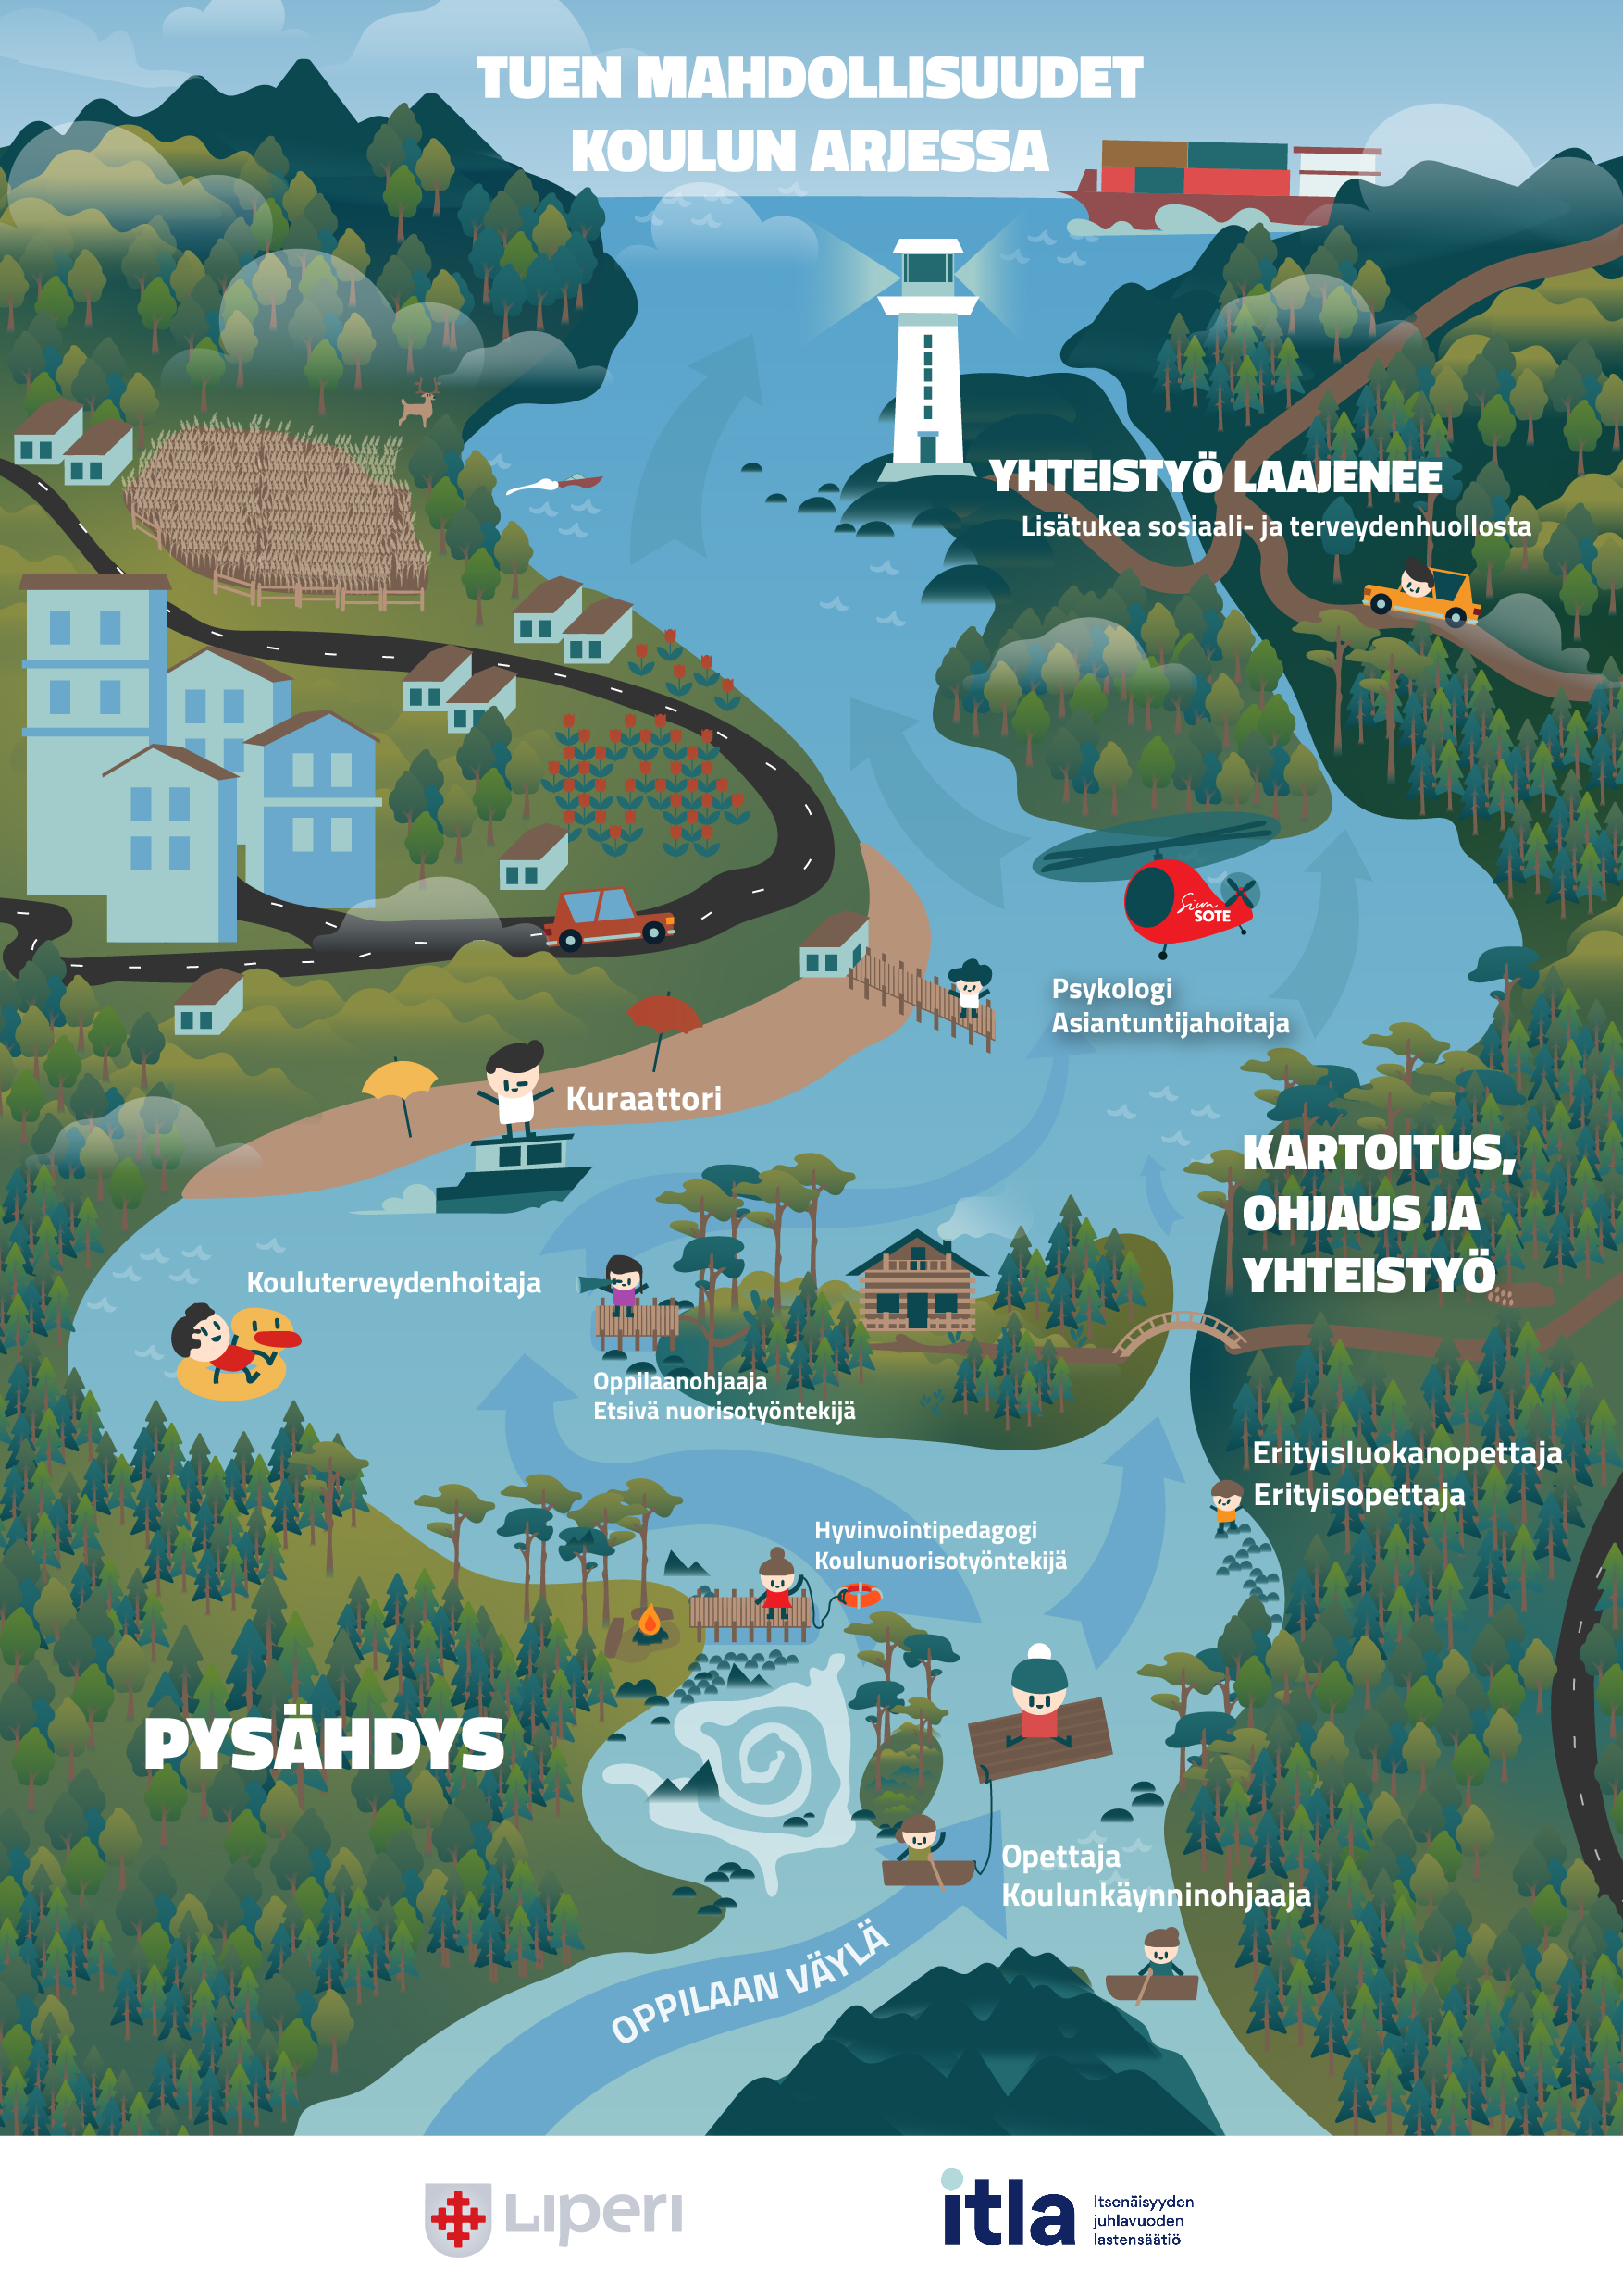 piirroskuva maisemasta, jossa oppilaan tuen tarjoajat kuvataan joen varrella olevina tukipisteinä oppilaan kulkiessa jokea pitkin